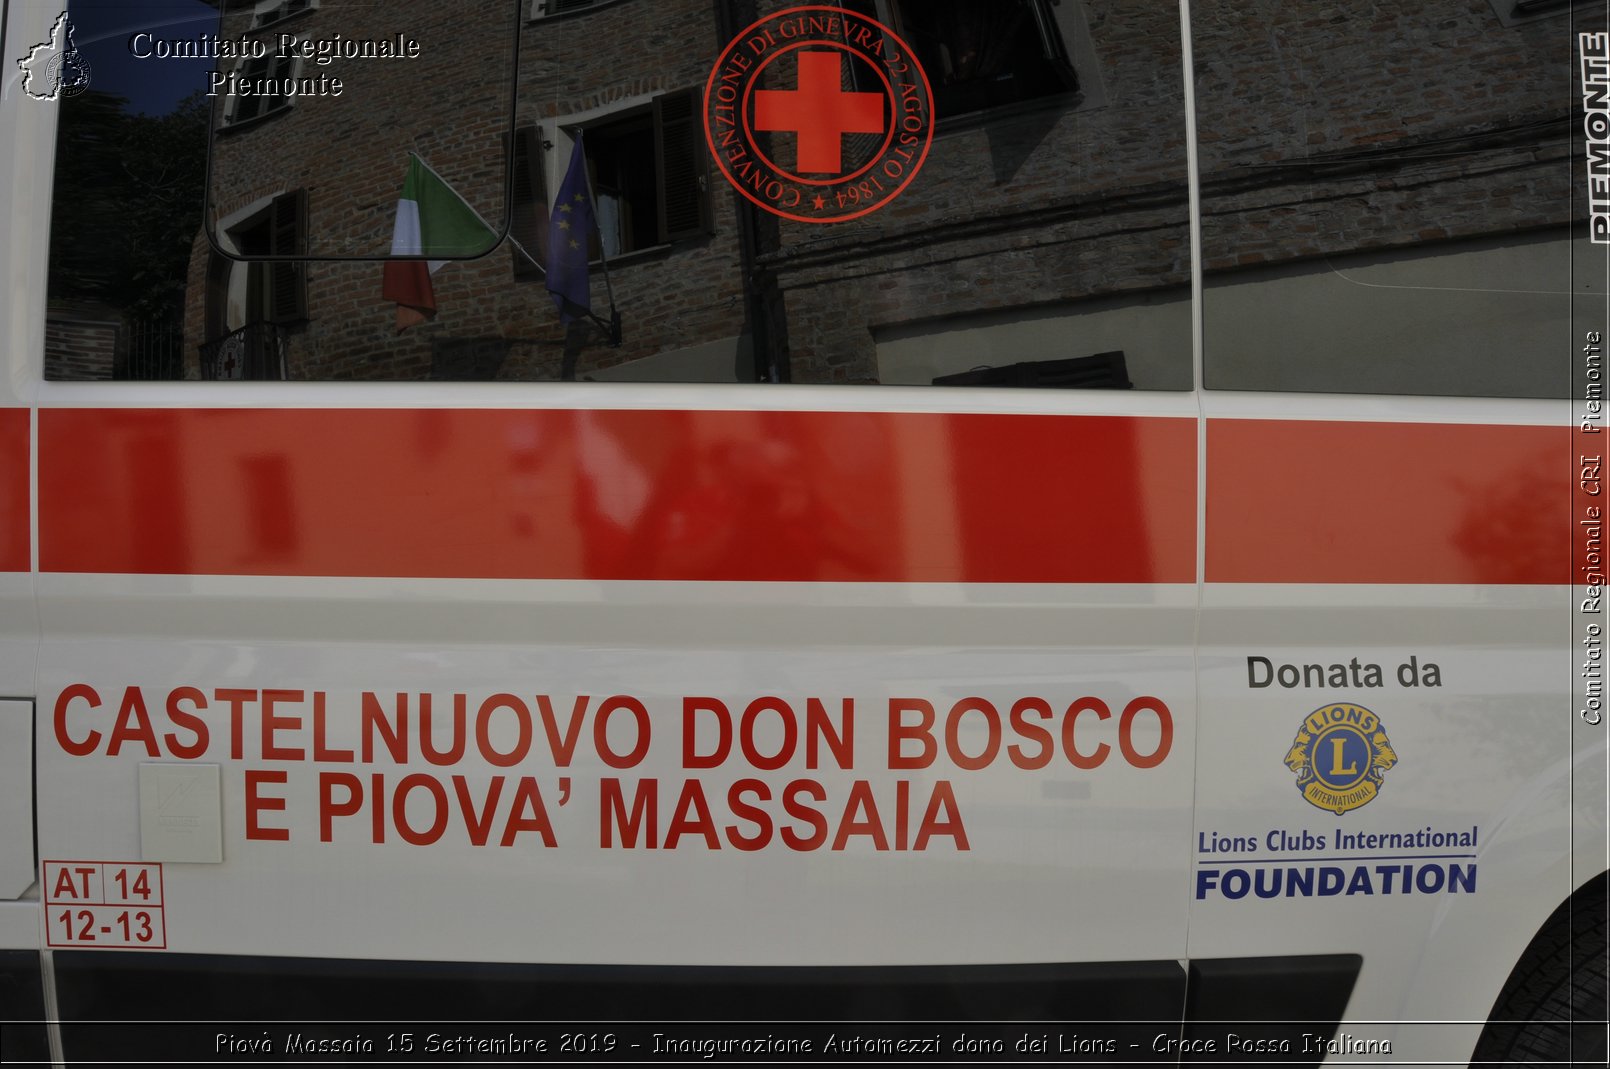 Piov Massaia 15 Settembre 2019 - Inaugurazione Automezzi dono dei Lions - Croce Rossa Italiana